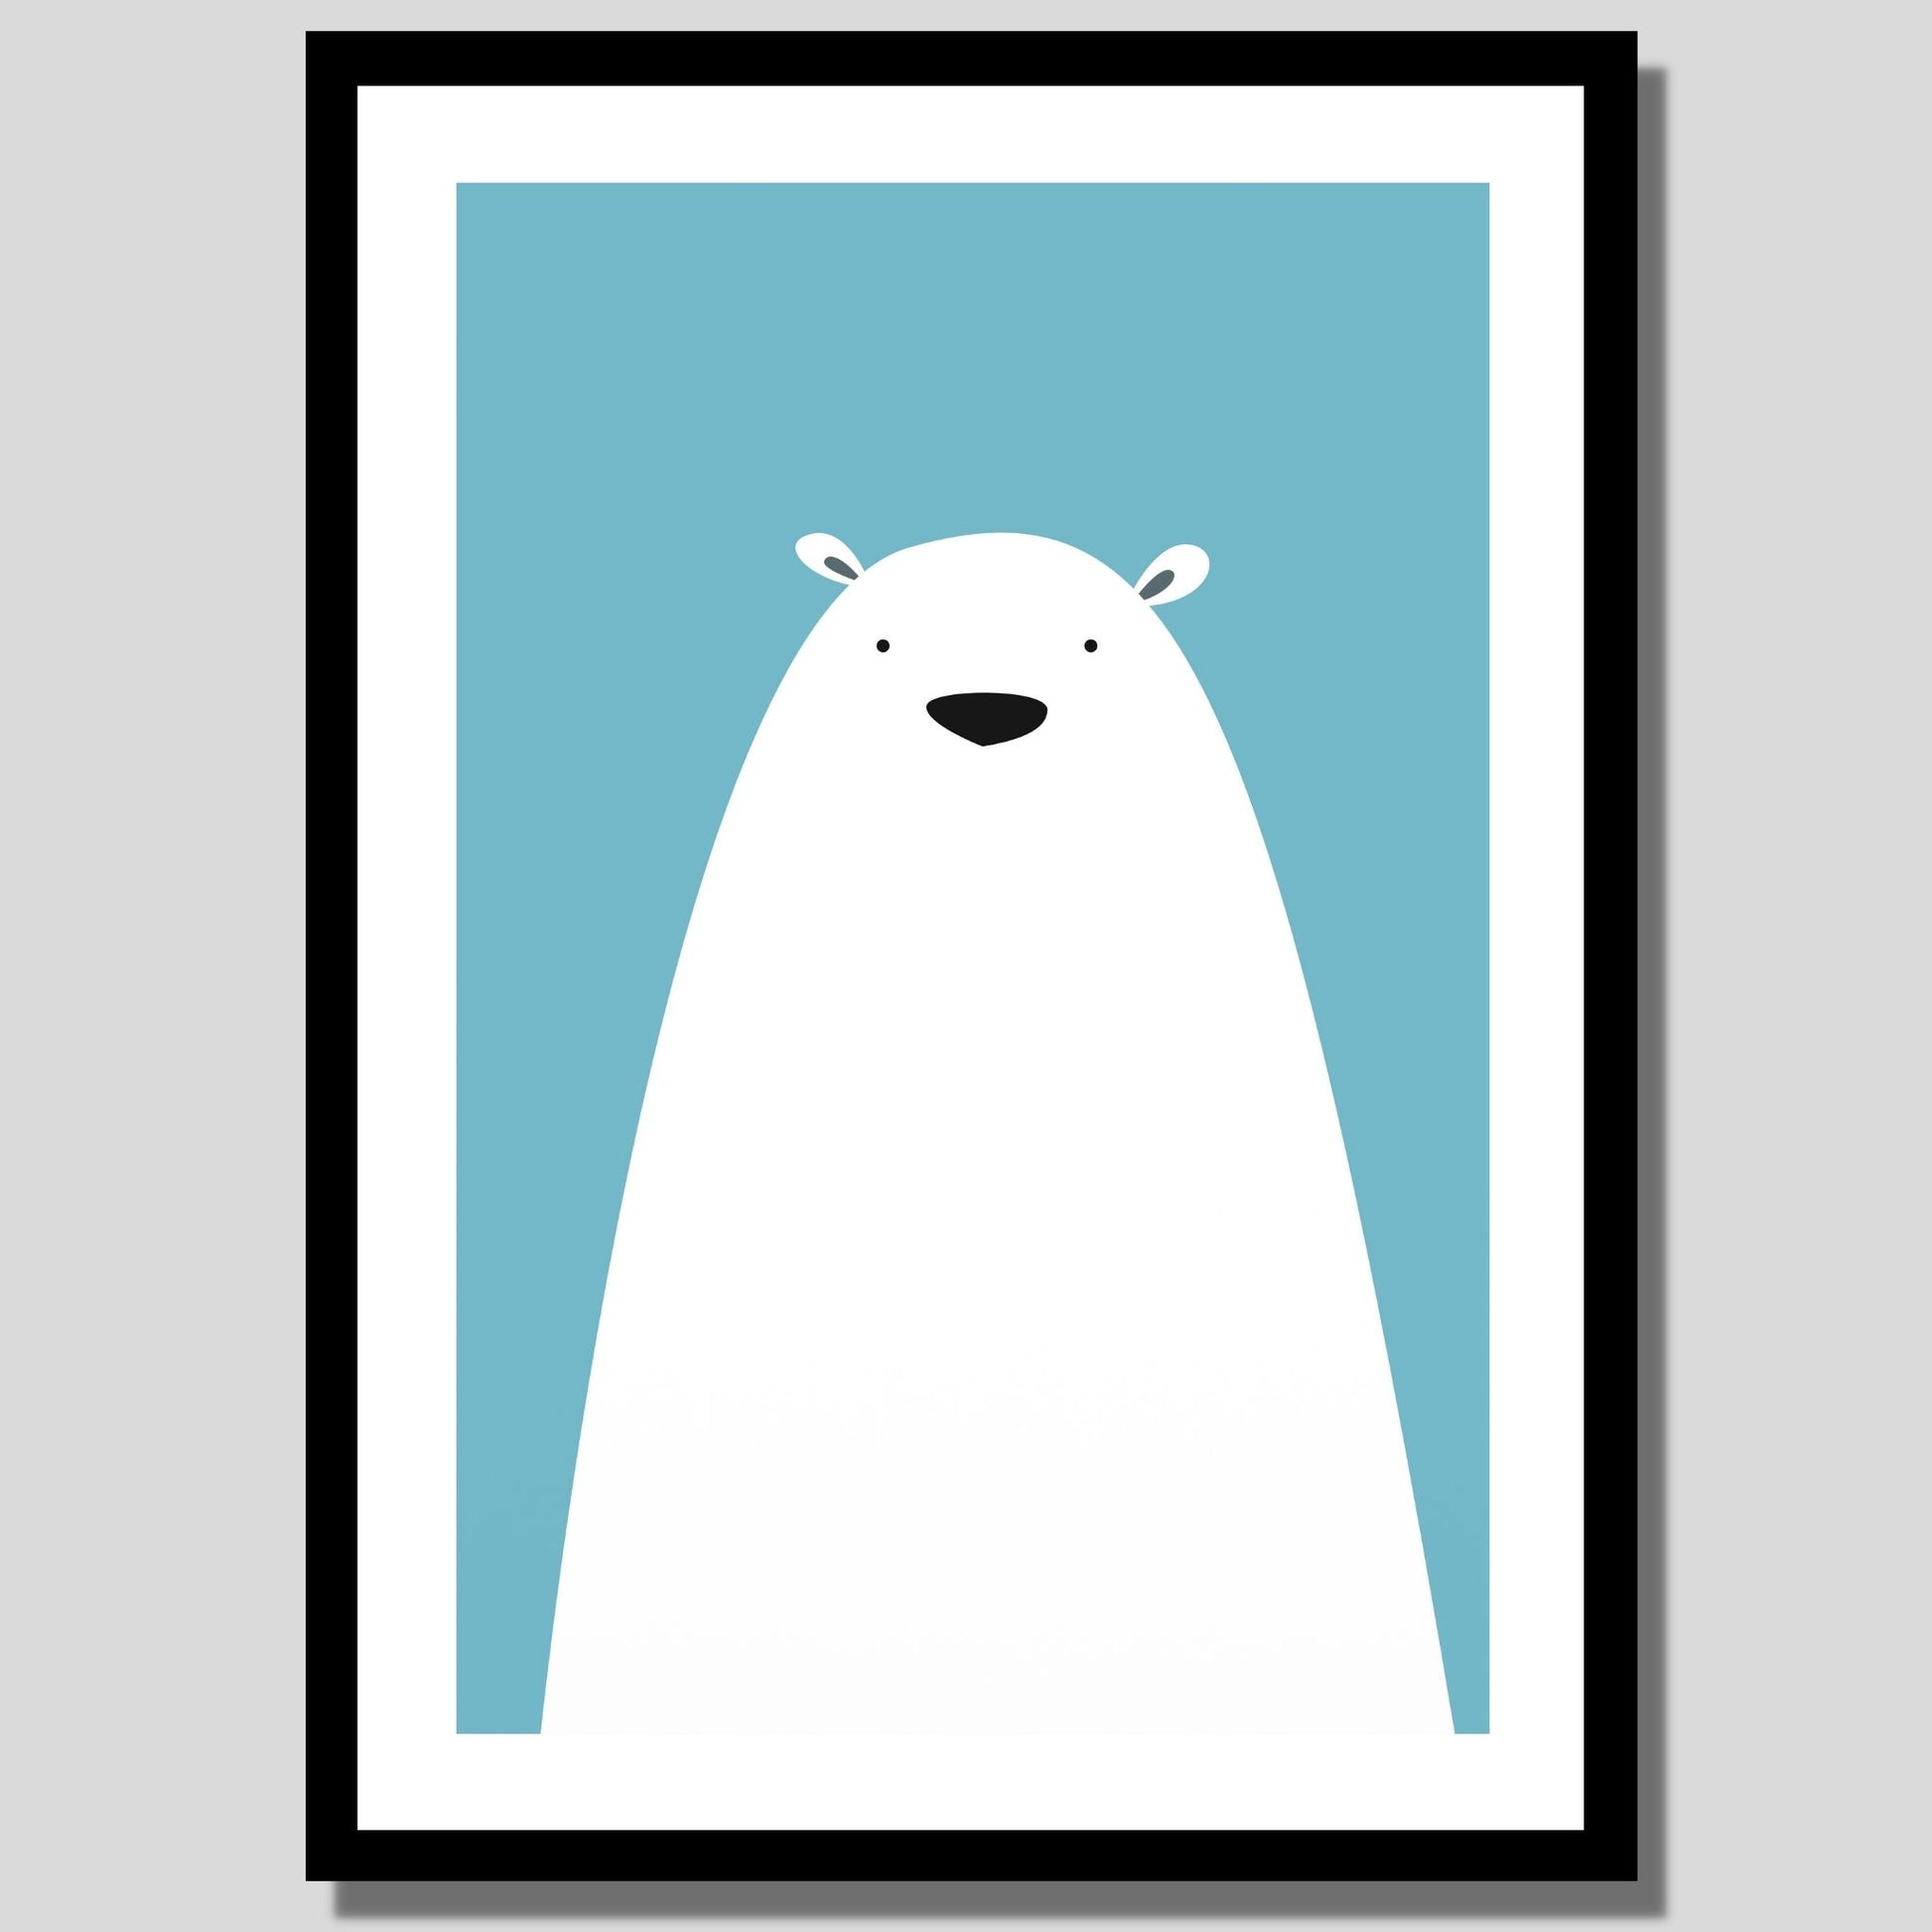 Cartoon Animal. Grafisk plakat for barnerommet.  Hvit bjørn på turkis bakgrunn. Illustrasjon av plakat med hvit kant rundt i sort ramme.